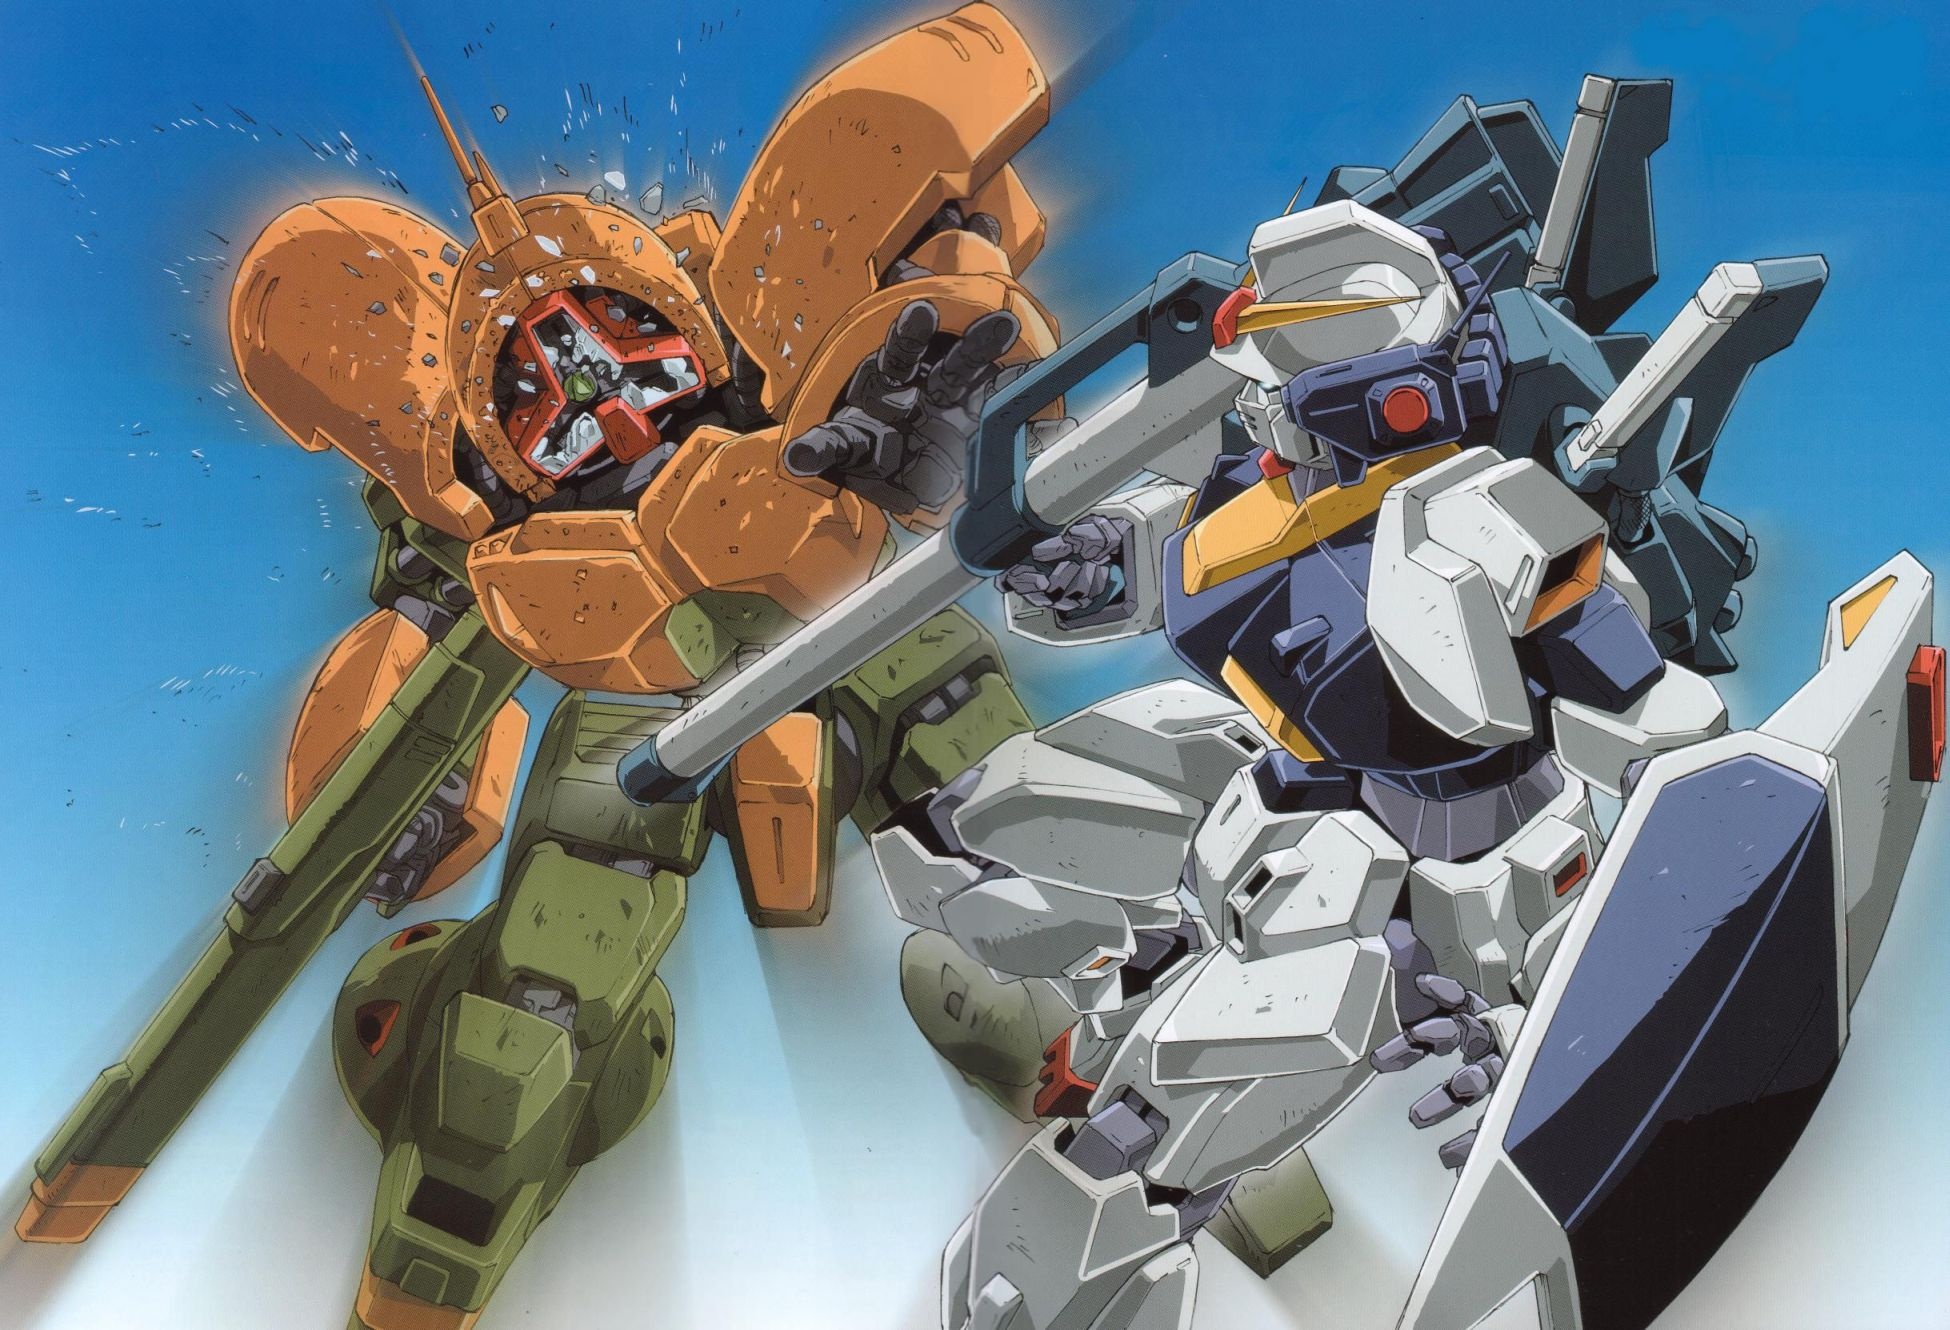 Gundam, Anime gundam wallpaper, Futuristic mechs, Sci-fi battles, 1950x1330 HD Desktop